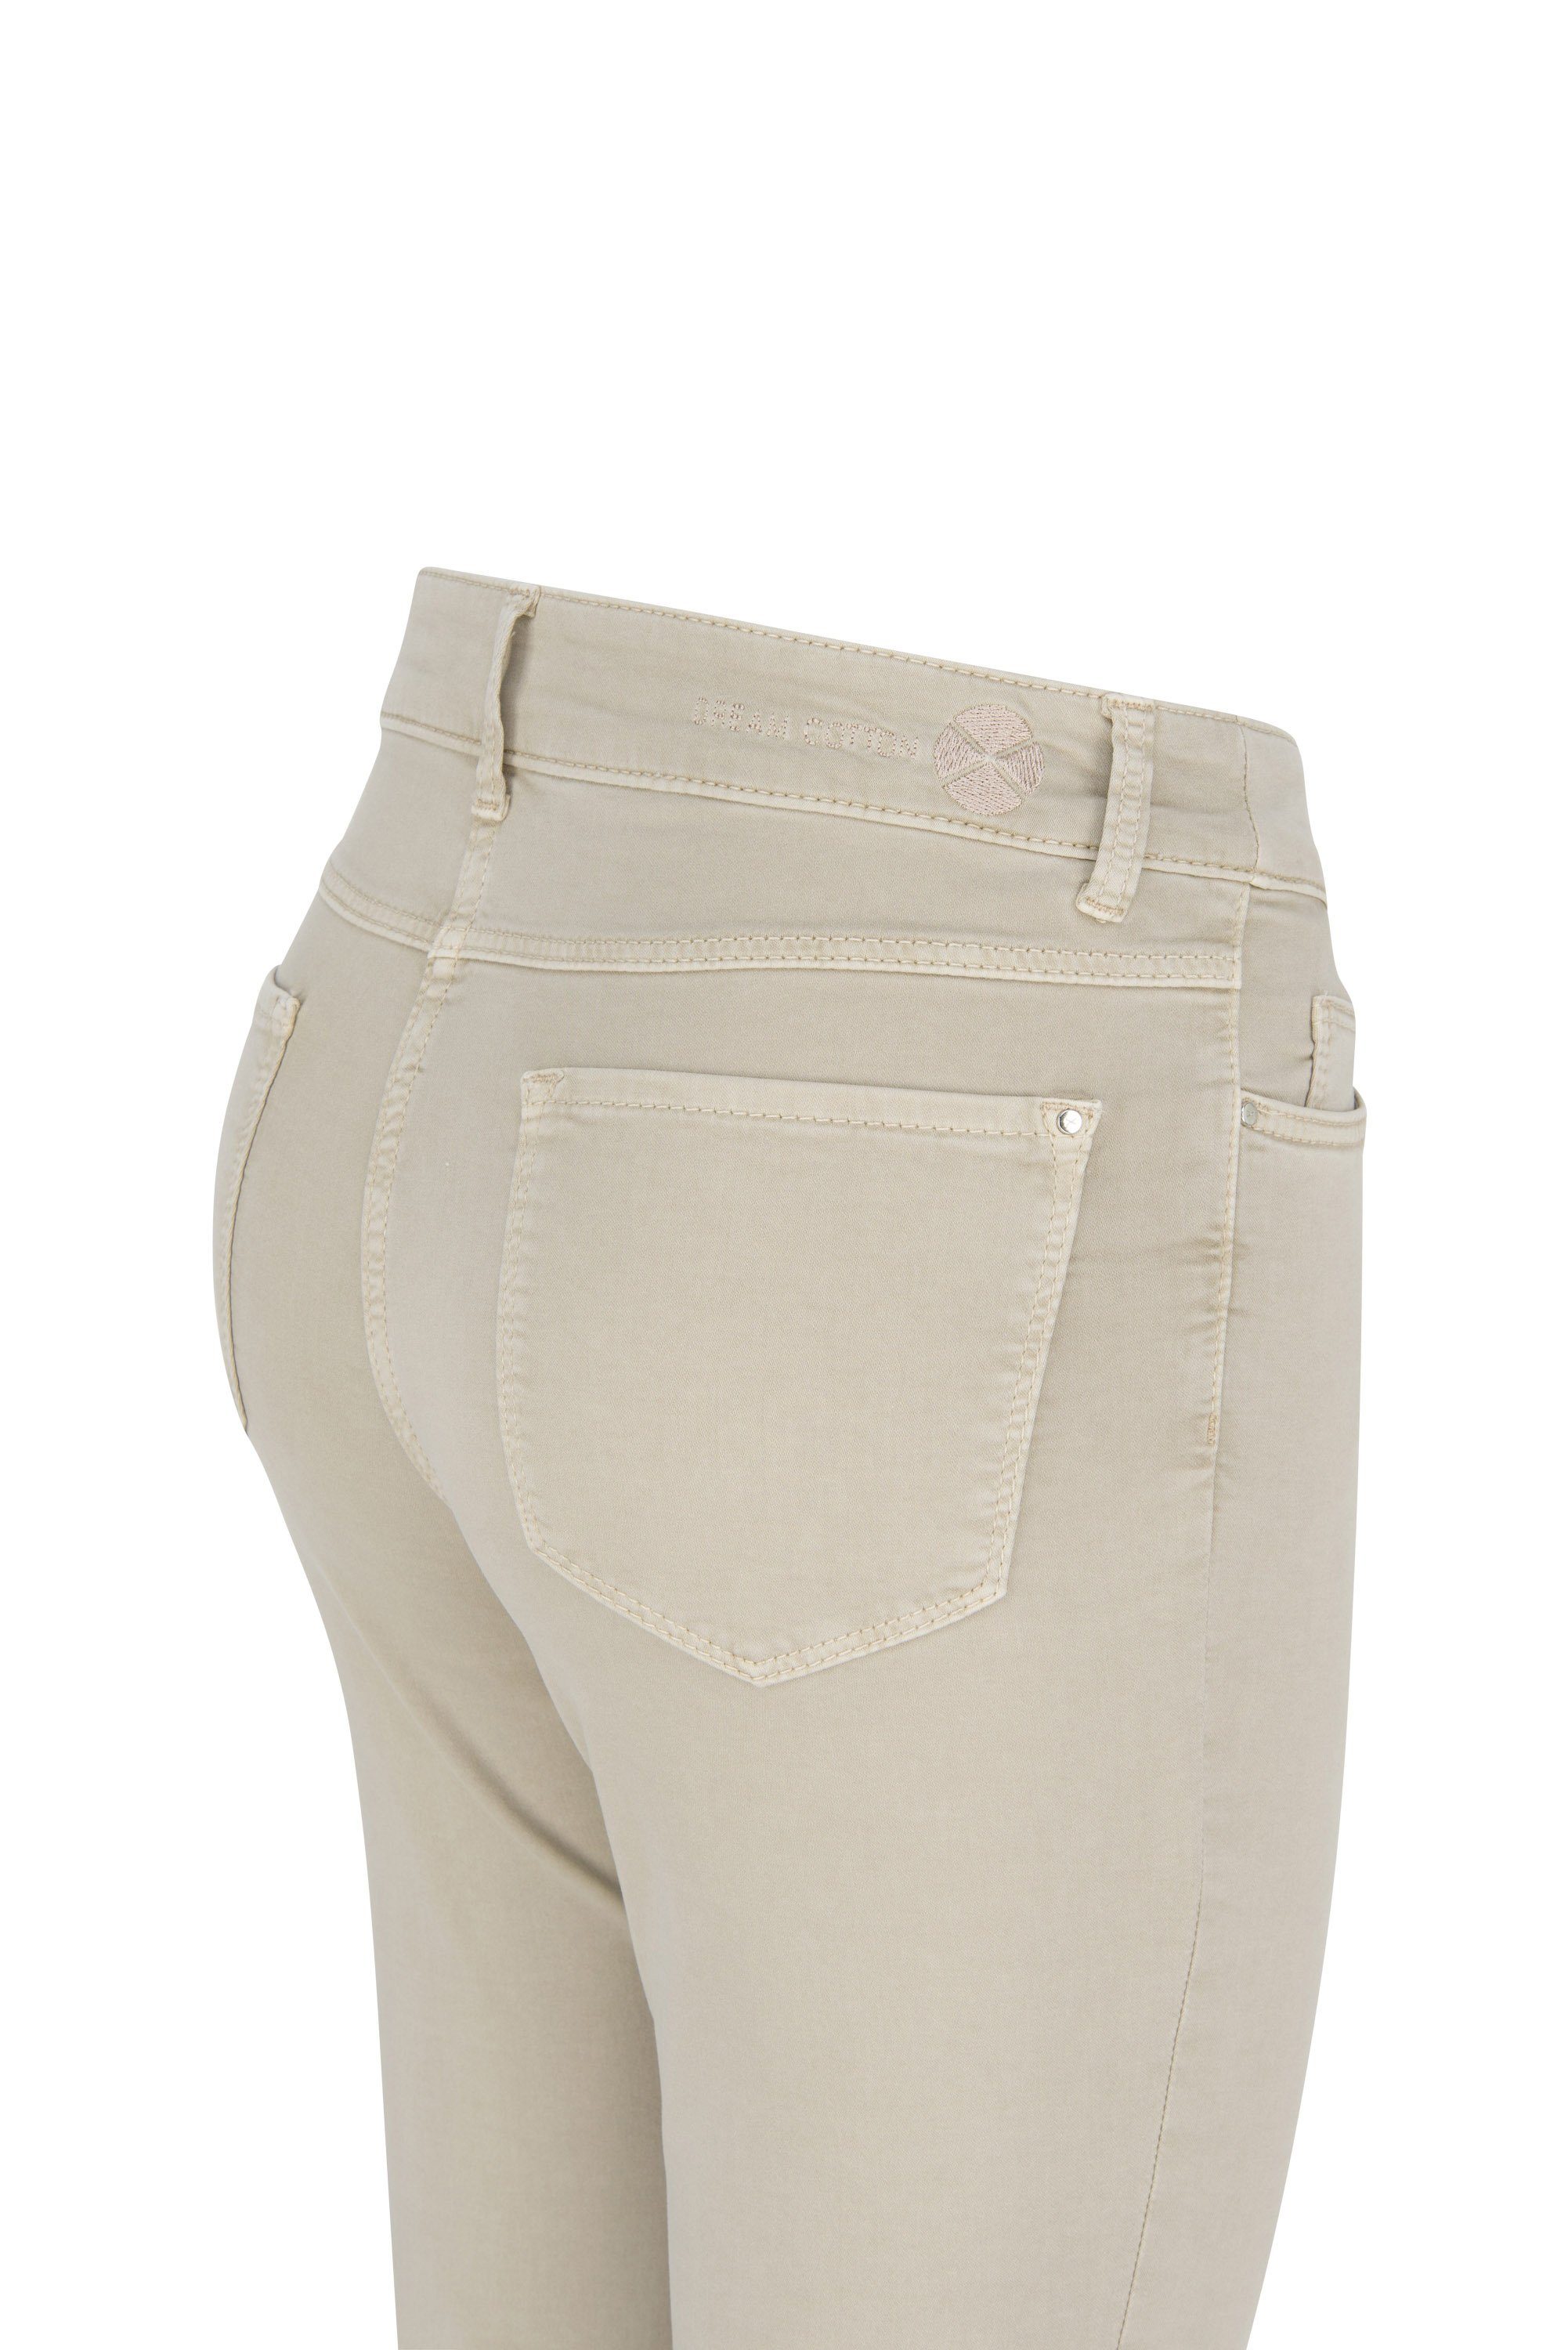 light beige Stretch-Jeans 5460-00-0425L-214R MAC DREAM MAC cotton